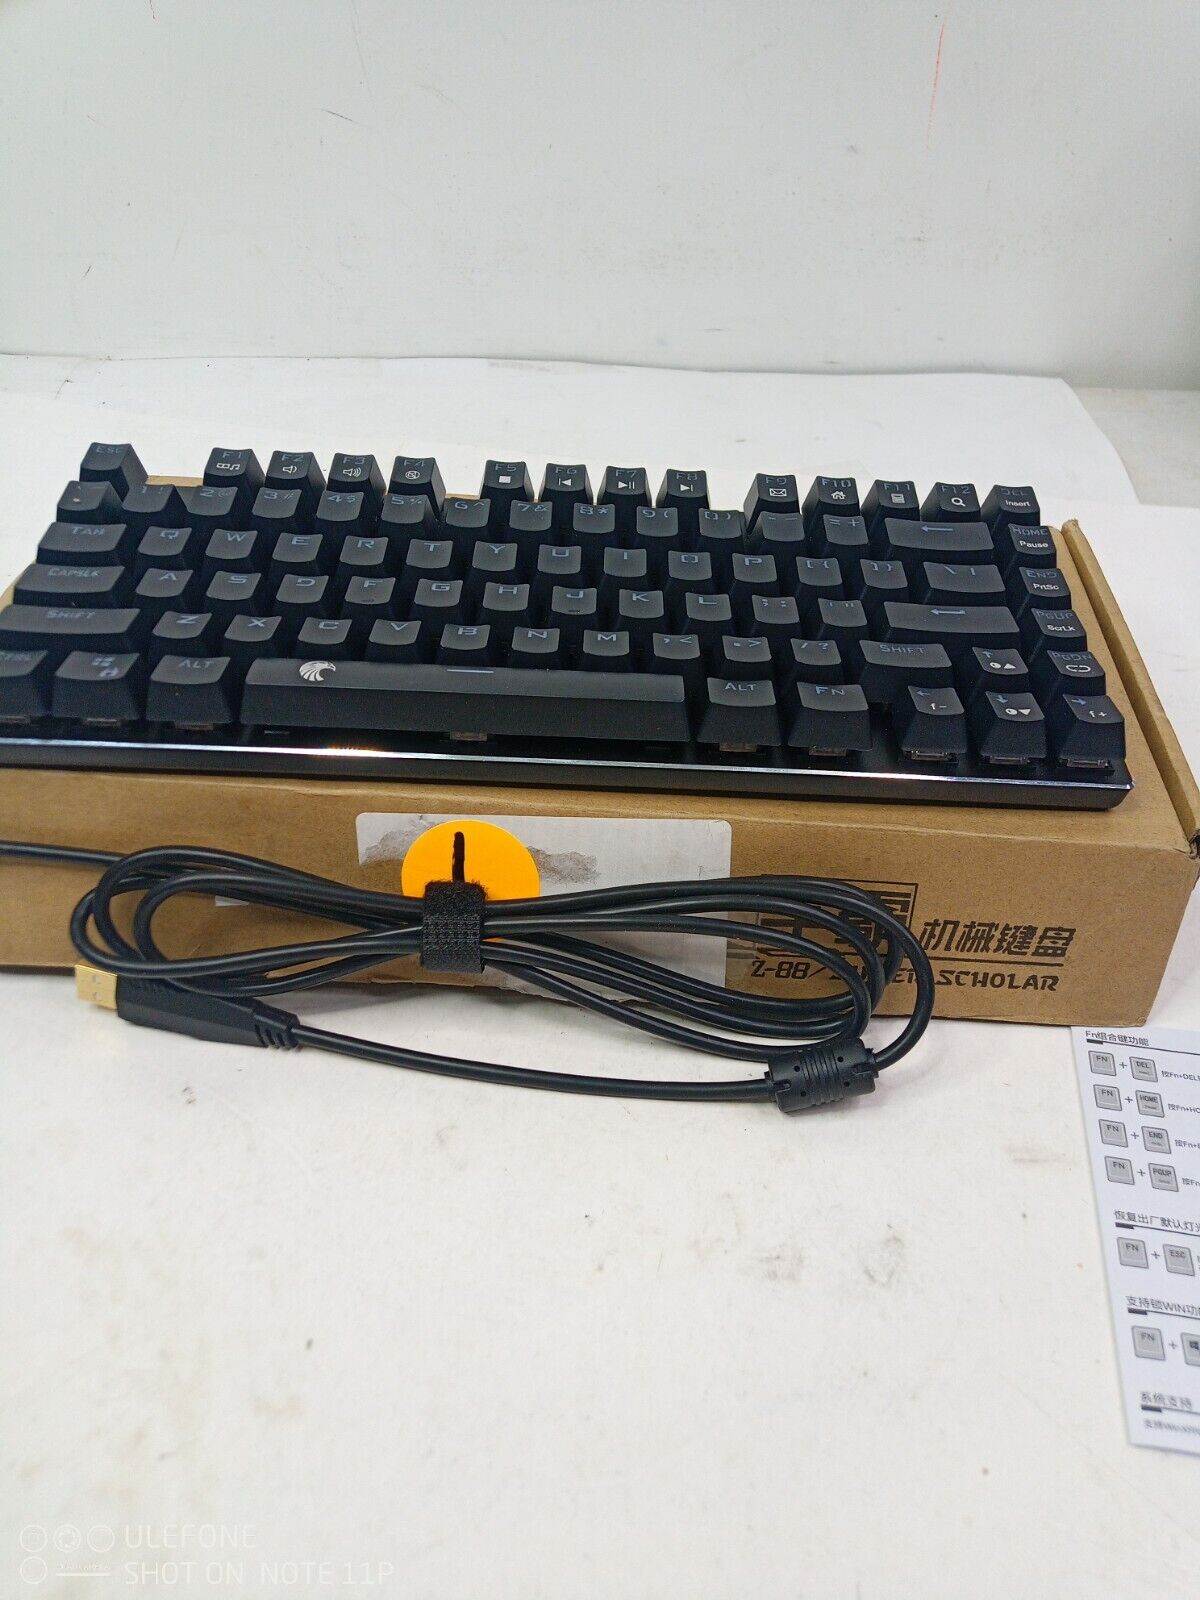 HUO JI E-Yooso Super Scholar/Z-88 White 81 Keys RGB Mechanical Gaming Keyboard